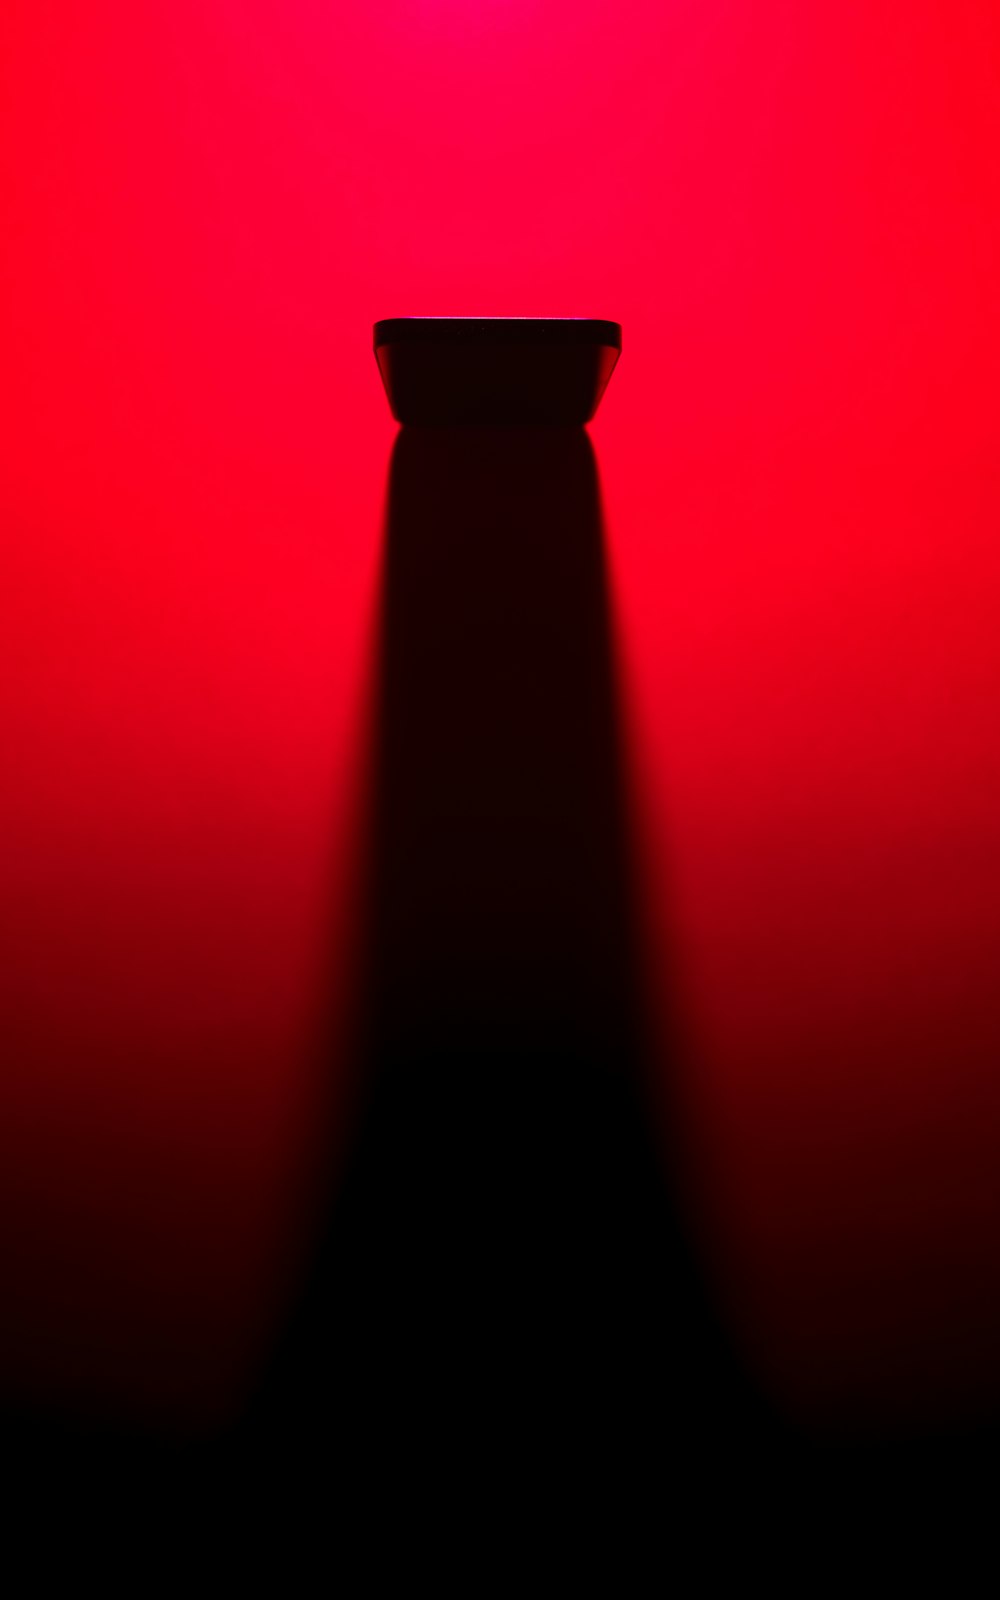 Ein rotes Licht leuchtet hell auf einem roten Hintergrund